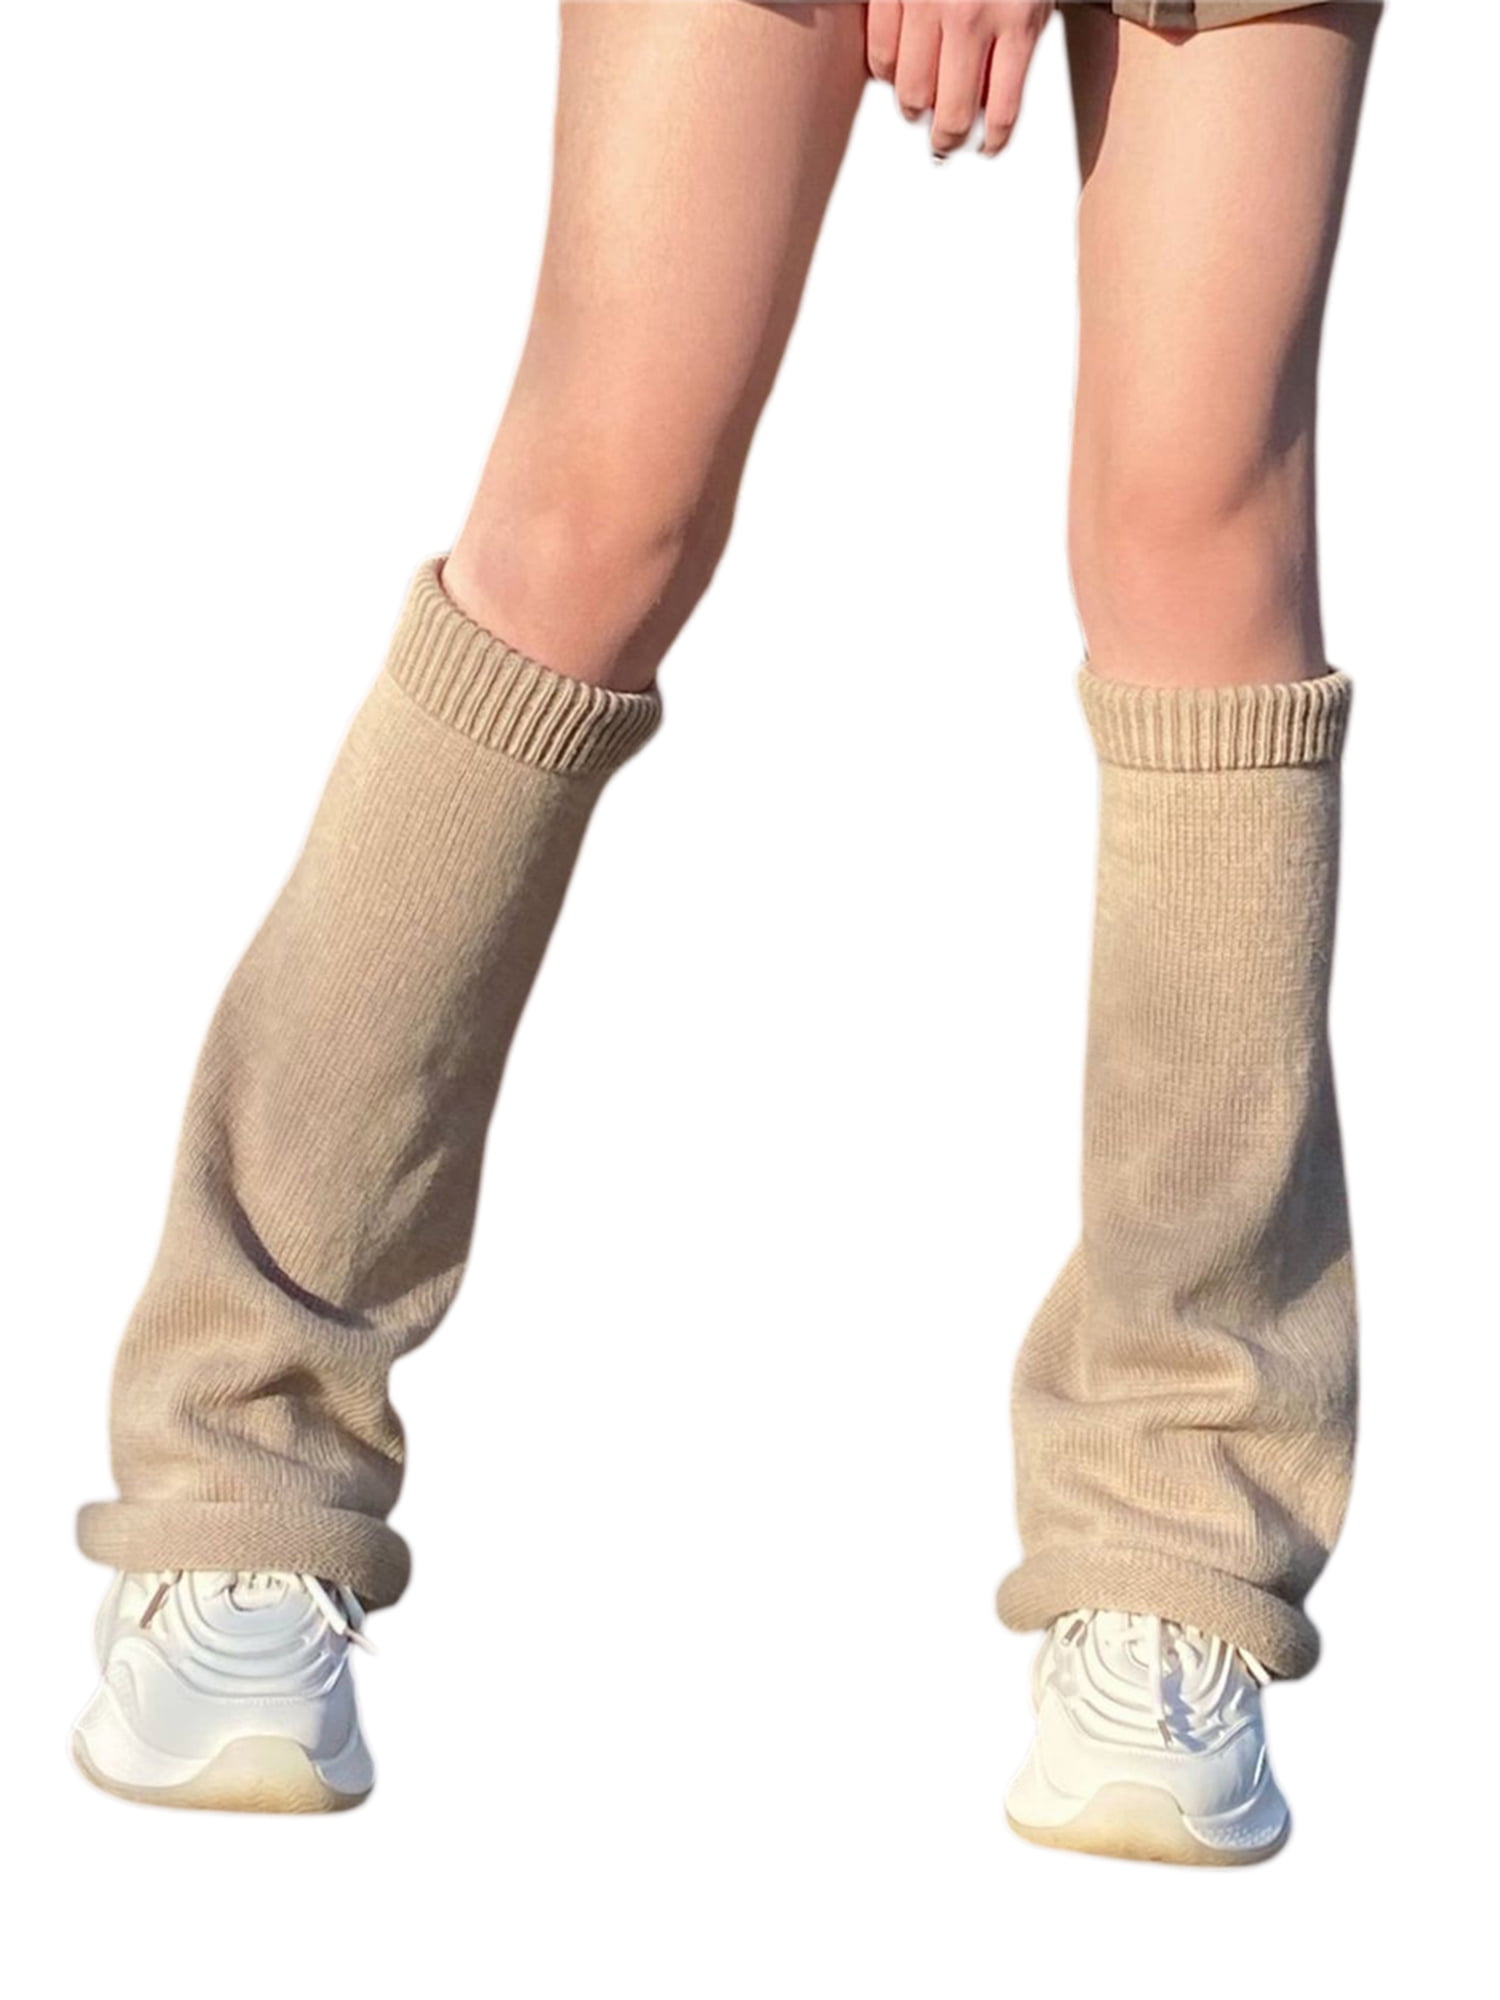 Tootu 1 Pair Women Knitted Leg Warmers Socks